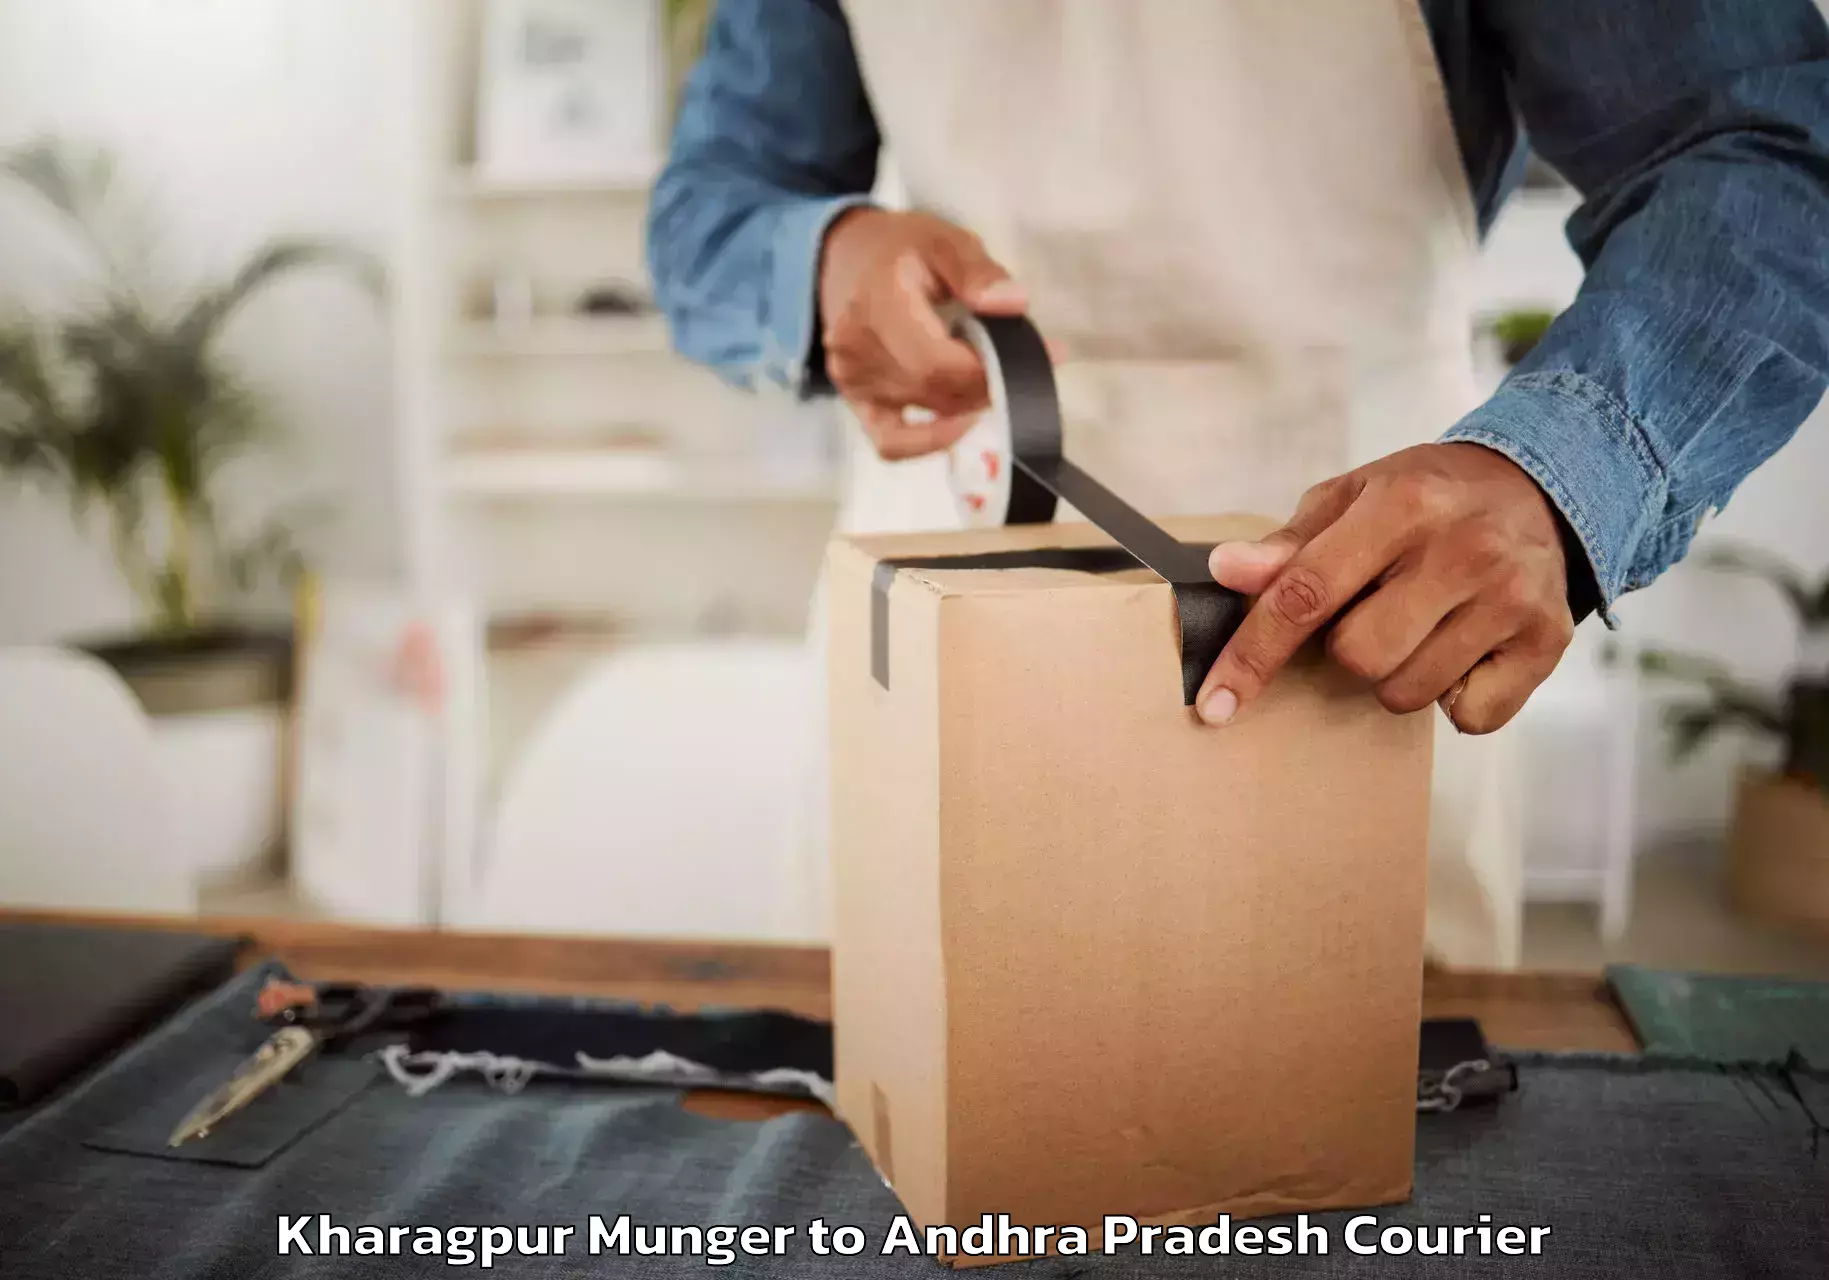 Furniture moving service Kharagpur Munger to Visakhapatnam